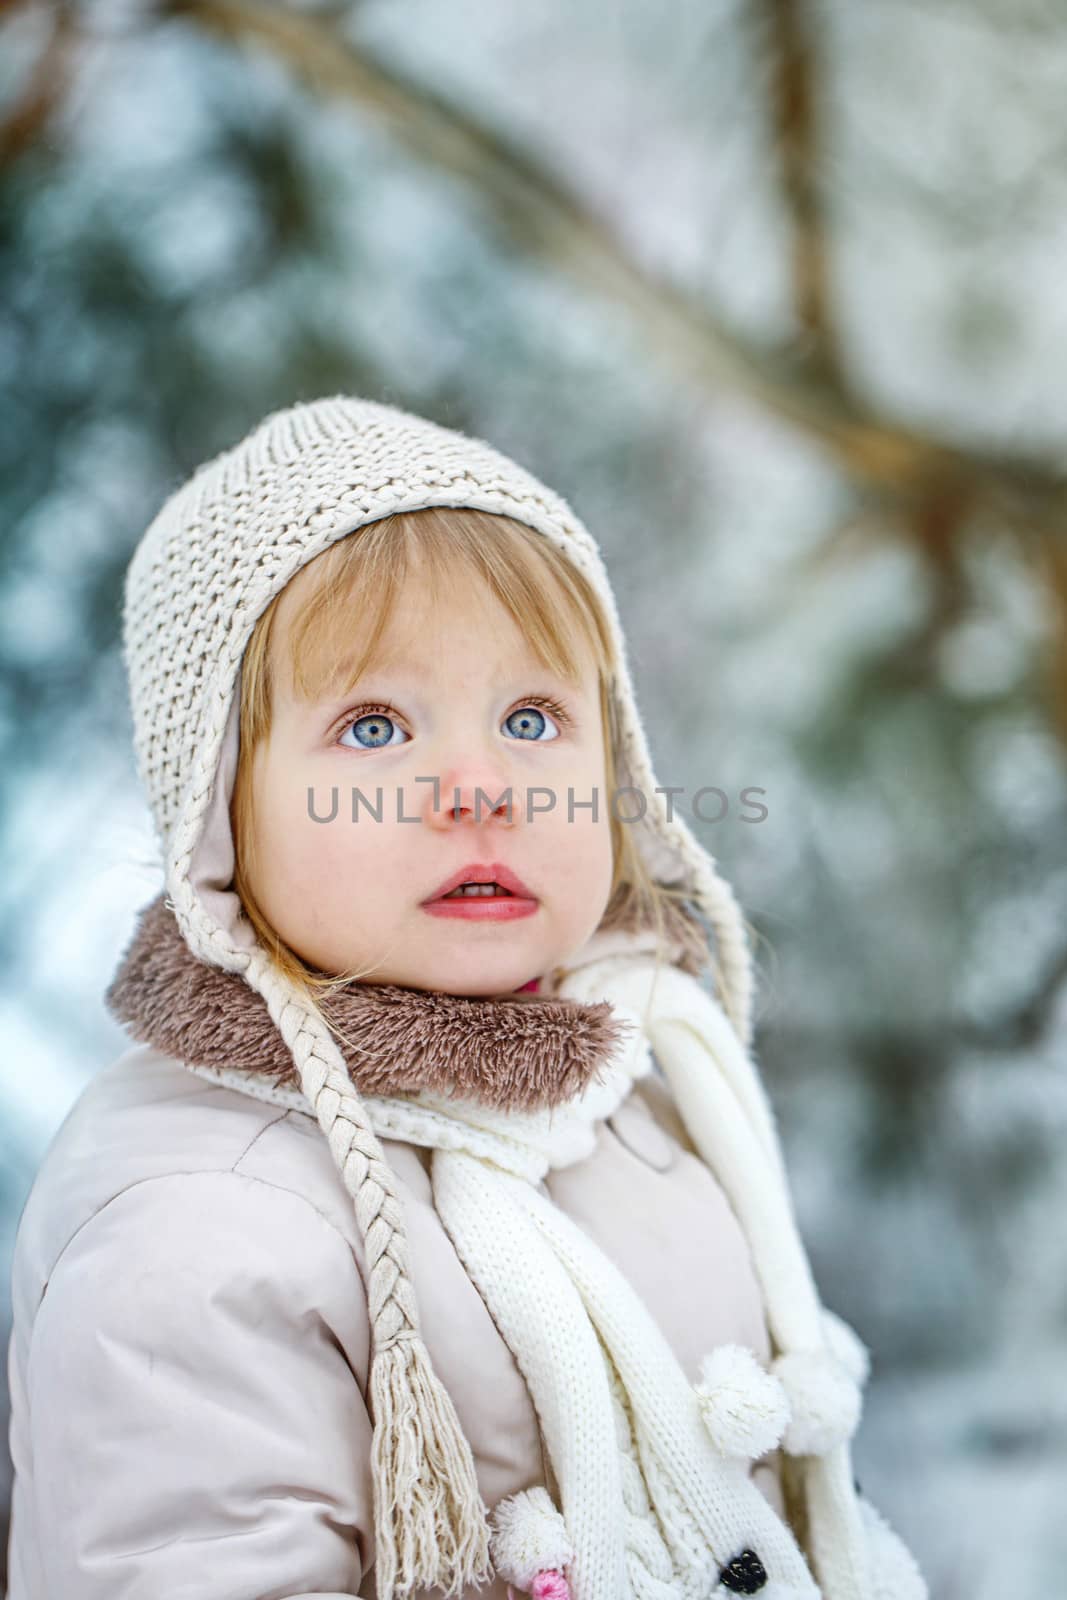 Girl walking outdoors in winter by Vagengeym